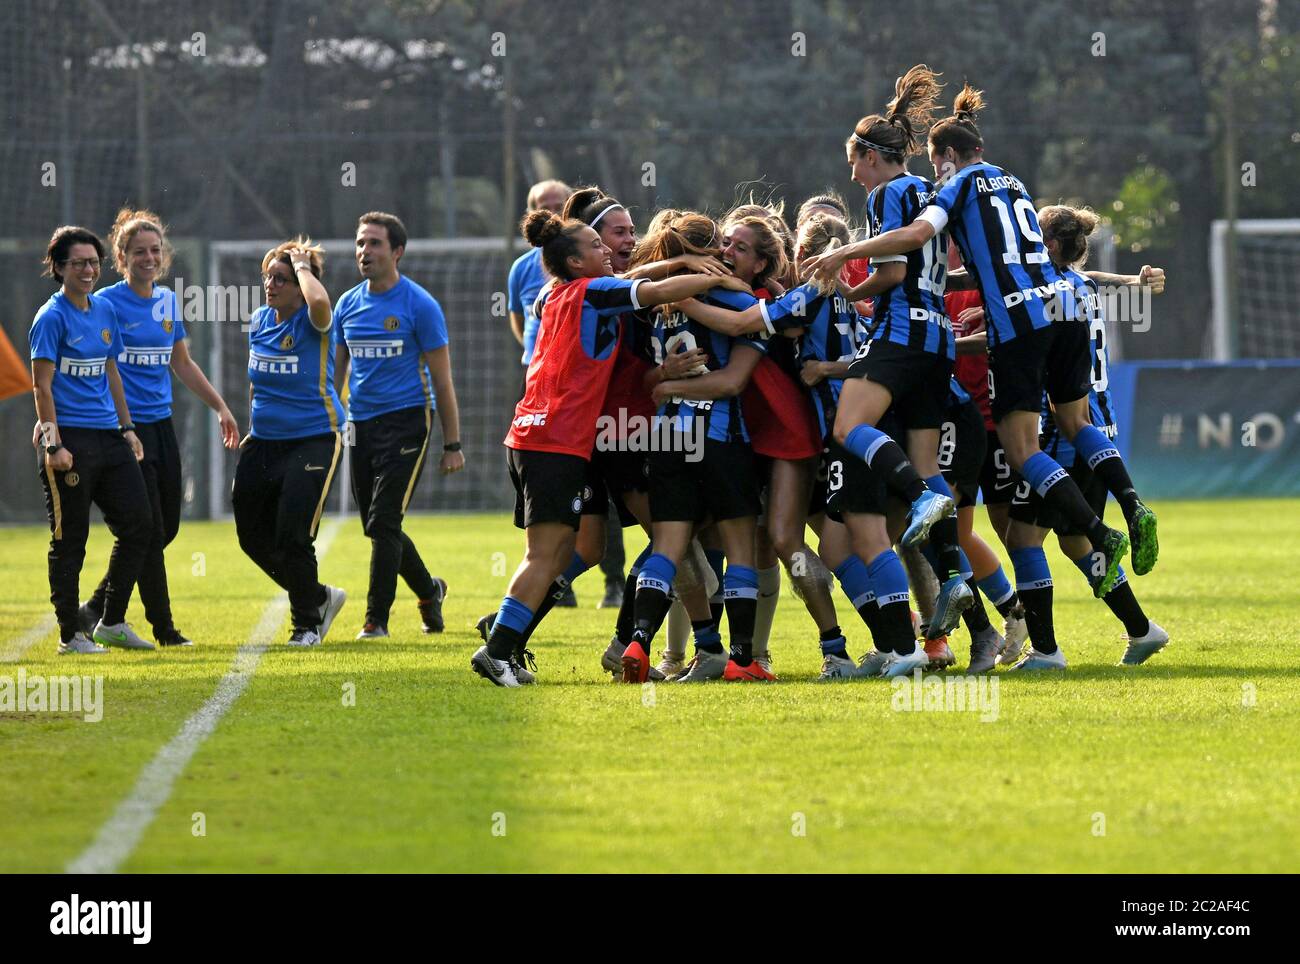 Le calciatrici festeggiano la vittoria, durante la partita di calcio professionistica italiana Inter Milan vs Hellas Verona, a Milano. Foto Stock